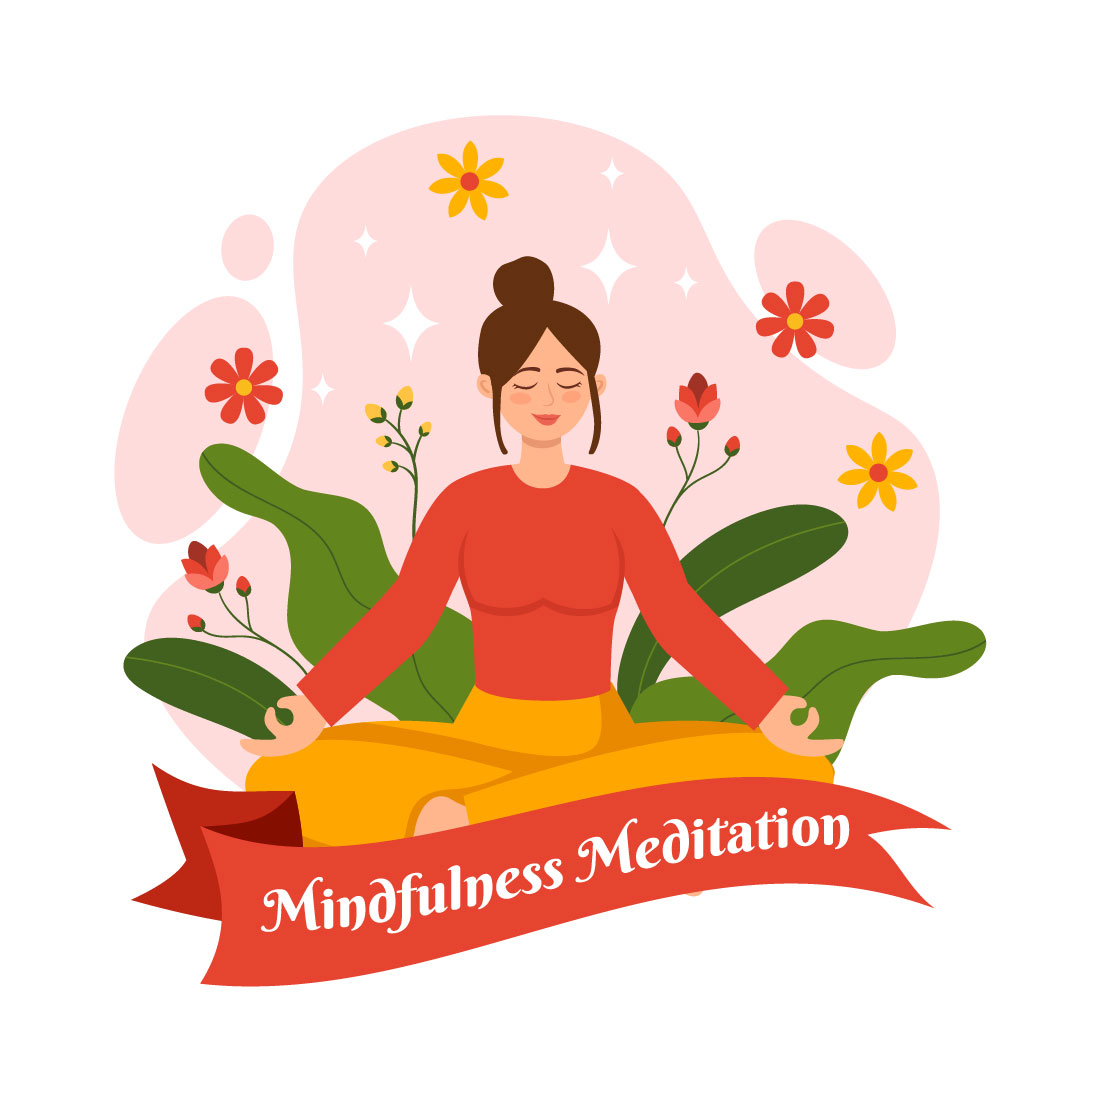 12 Mindfulness Meditation Illustration preview image.